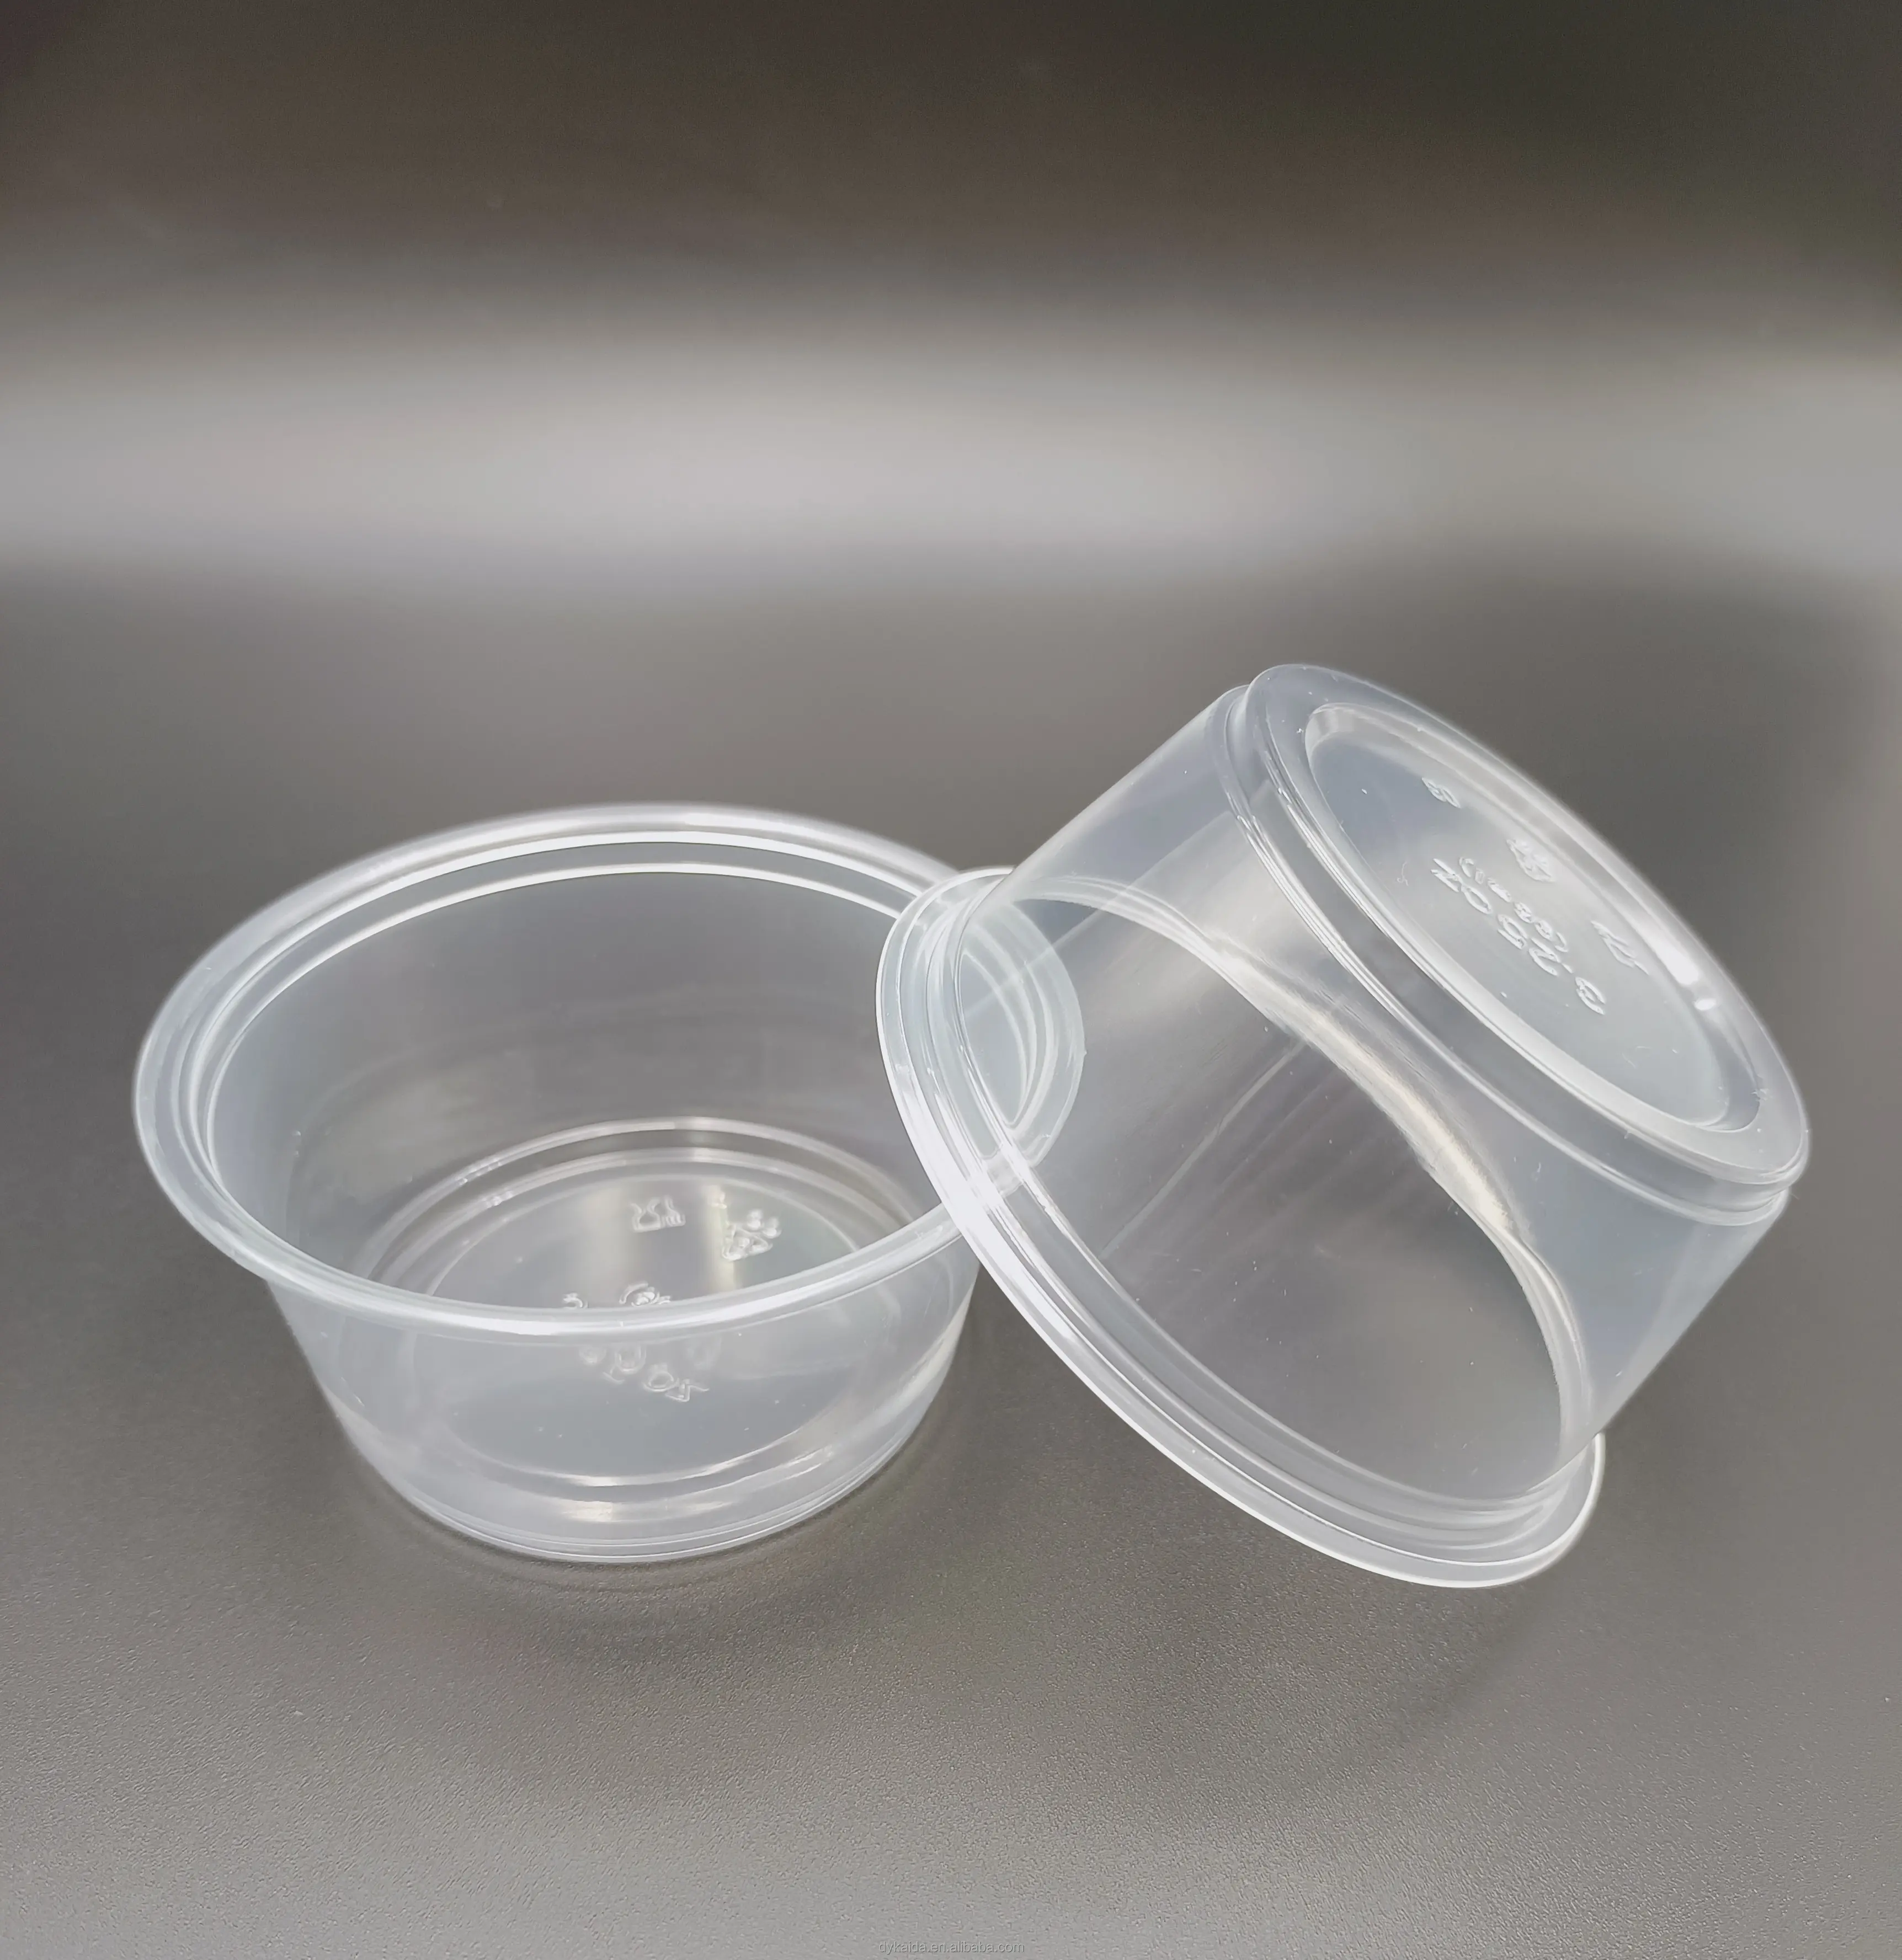 모든 크기 1 2 3 4 oz 식품 등급 도매 미니 일회용 플라스틱 투명 부분 용기 뚜껑이있는 소스 조미료 컵 용기